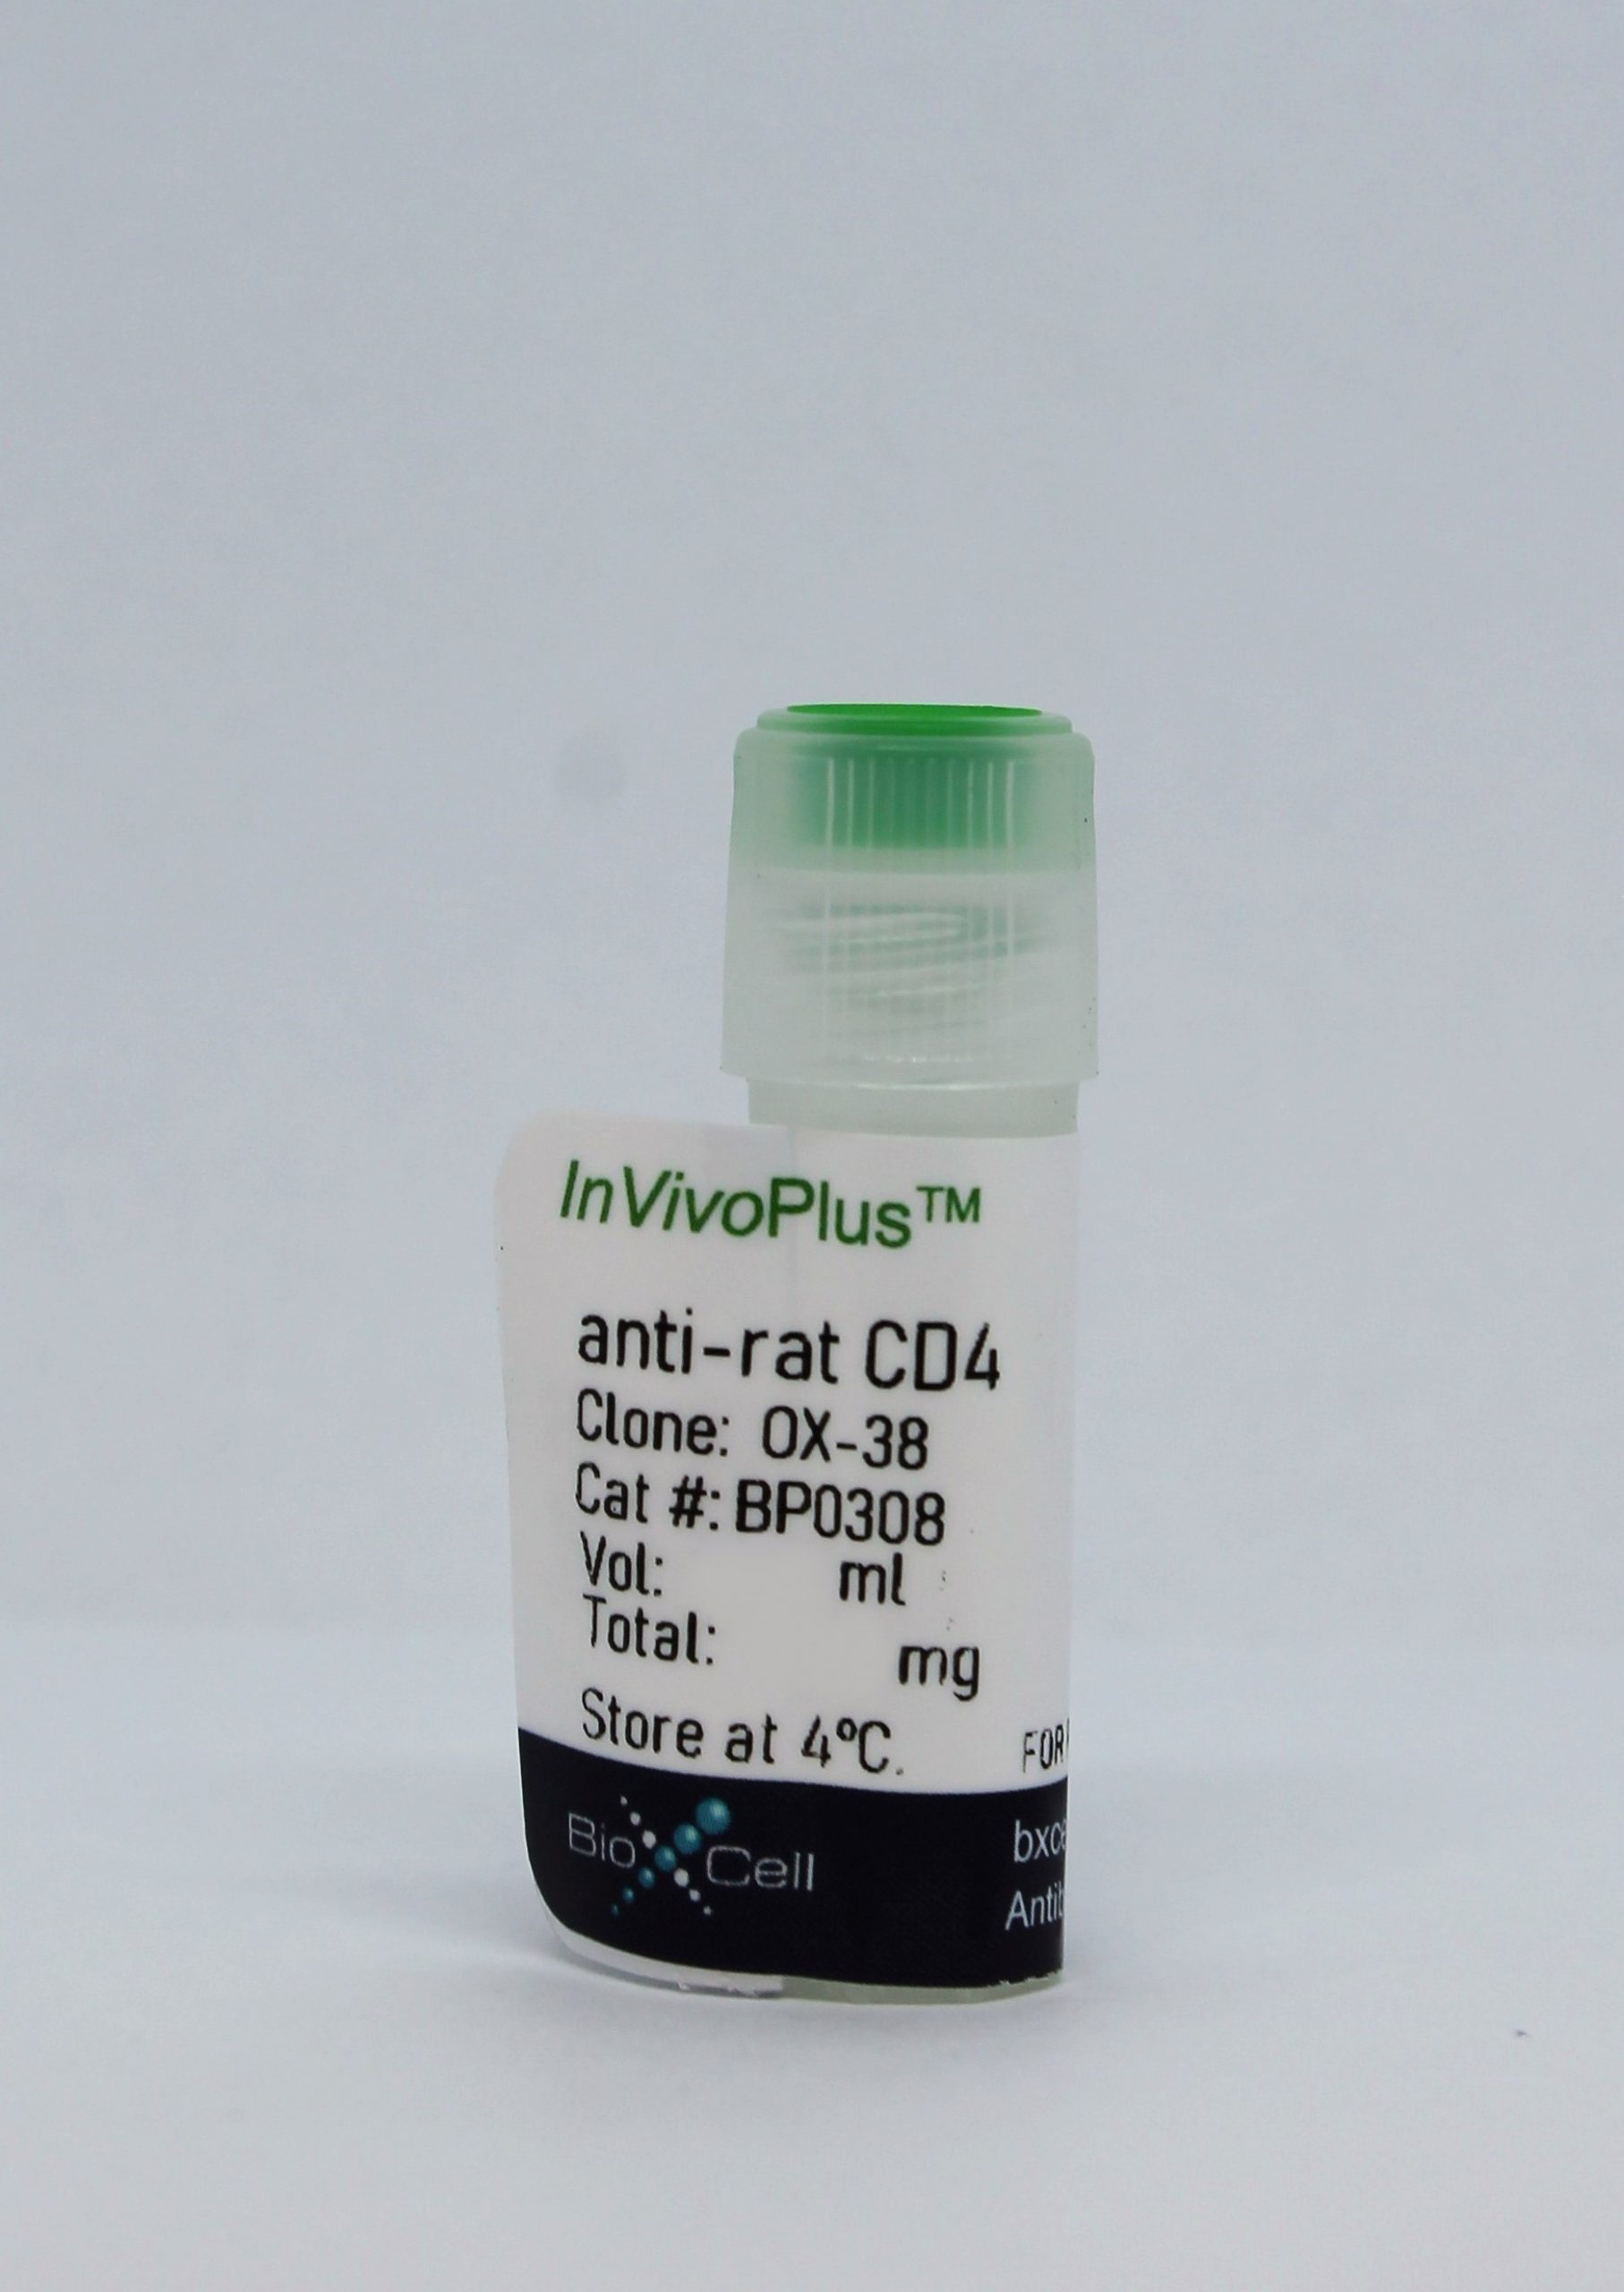 InVivoPlus anti-rat CD4